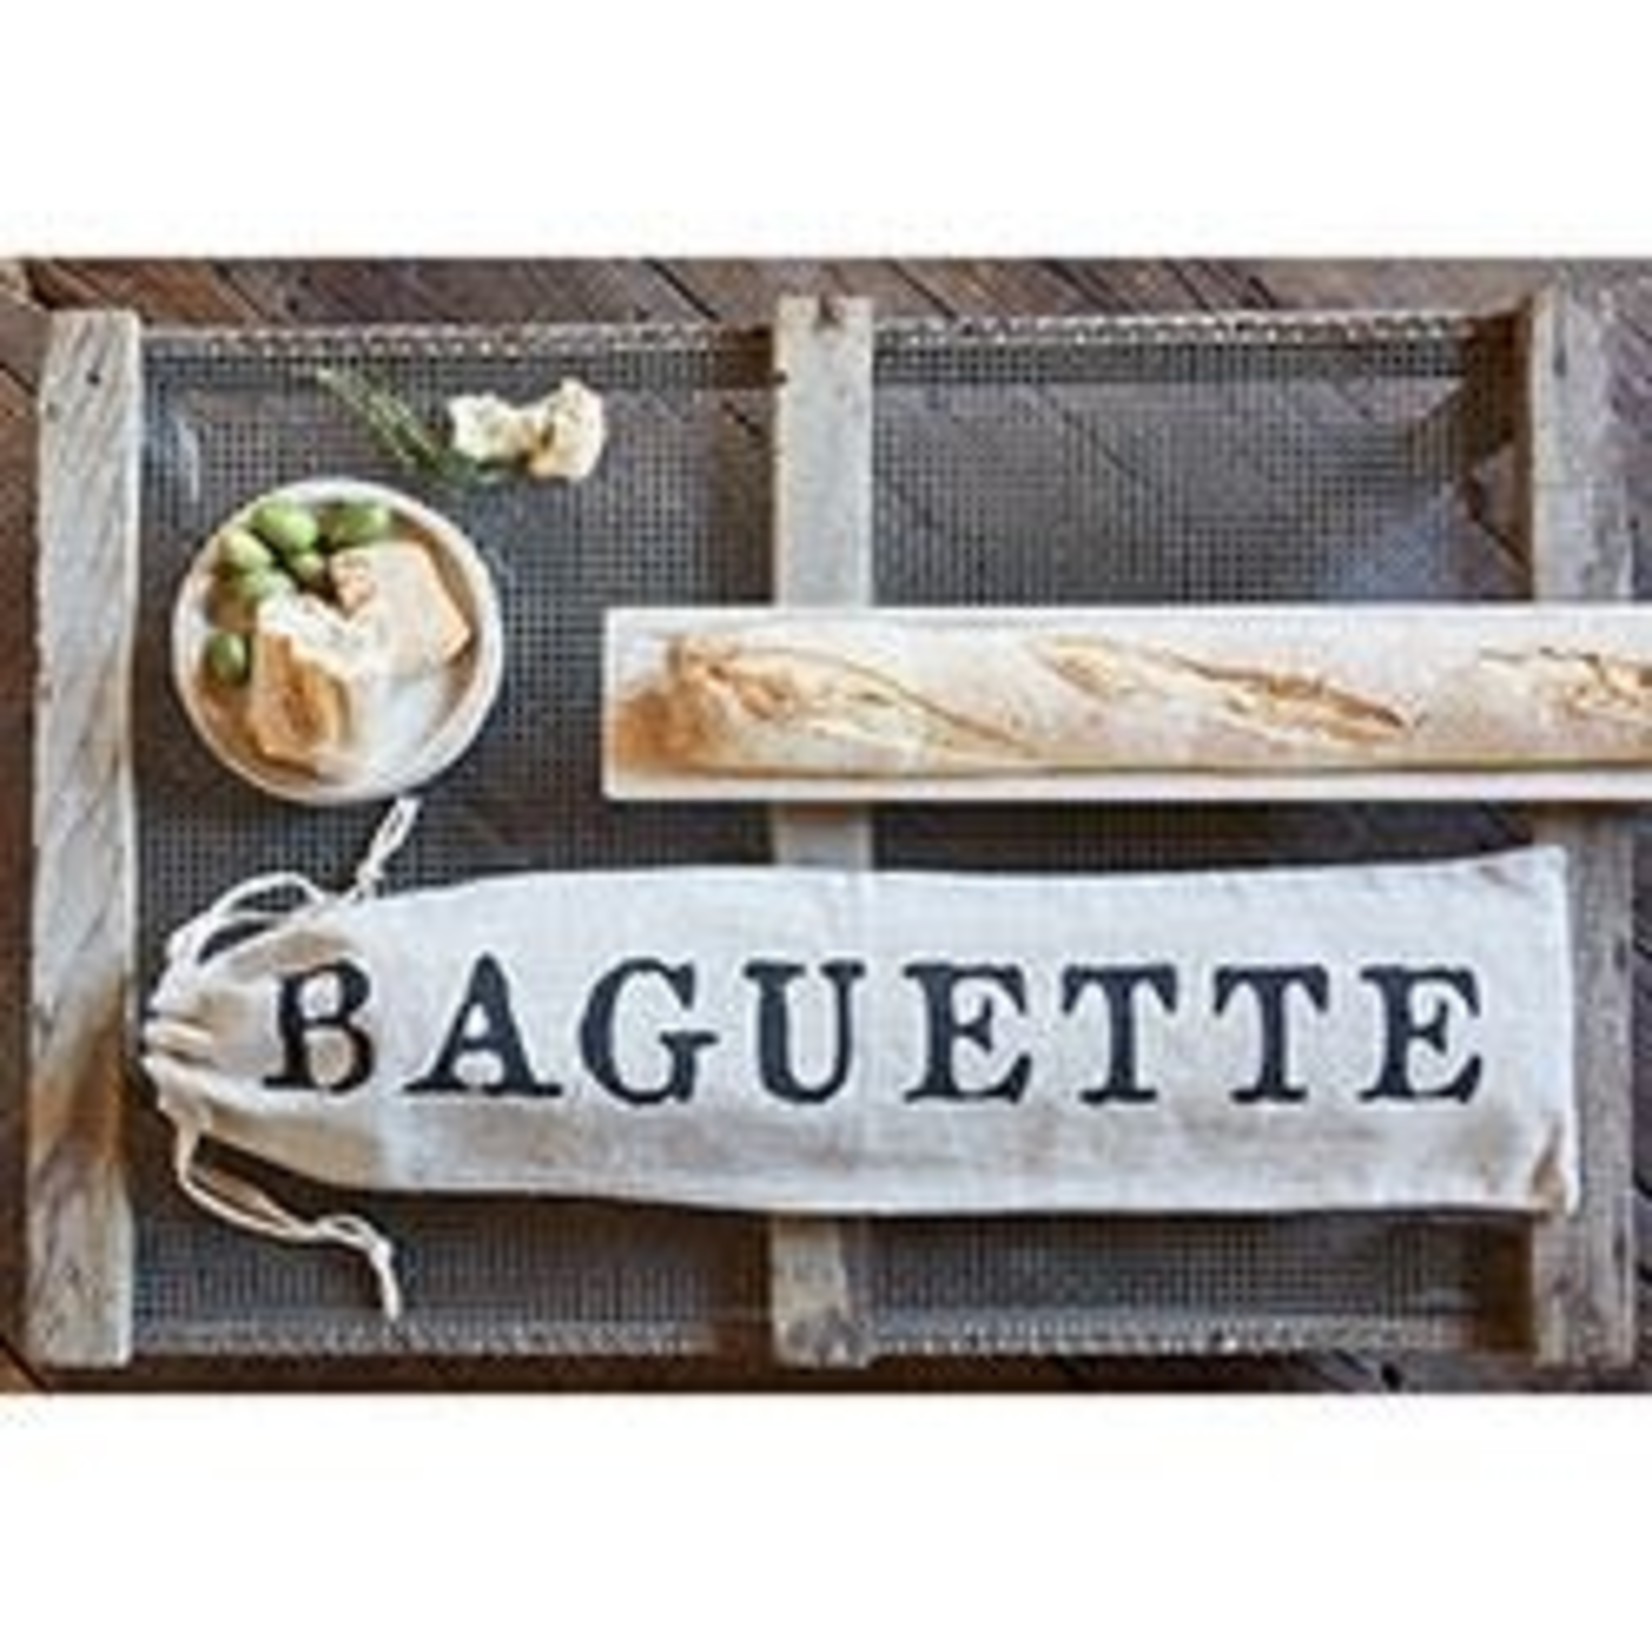 Baguette bag